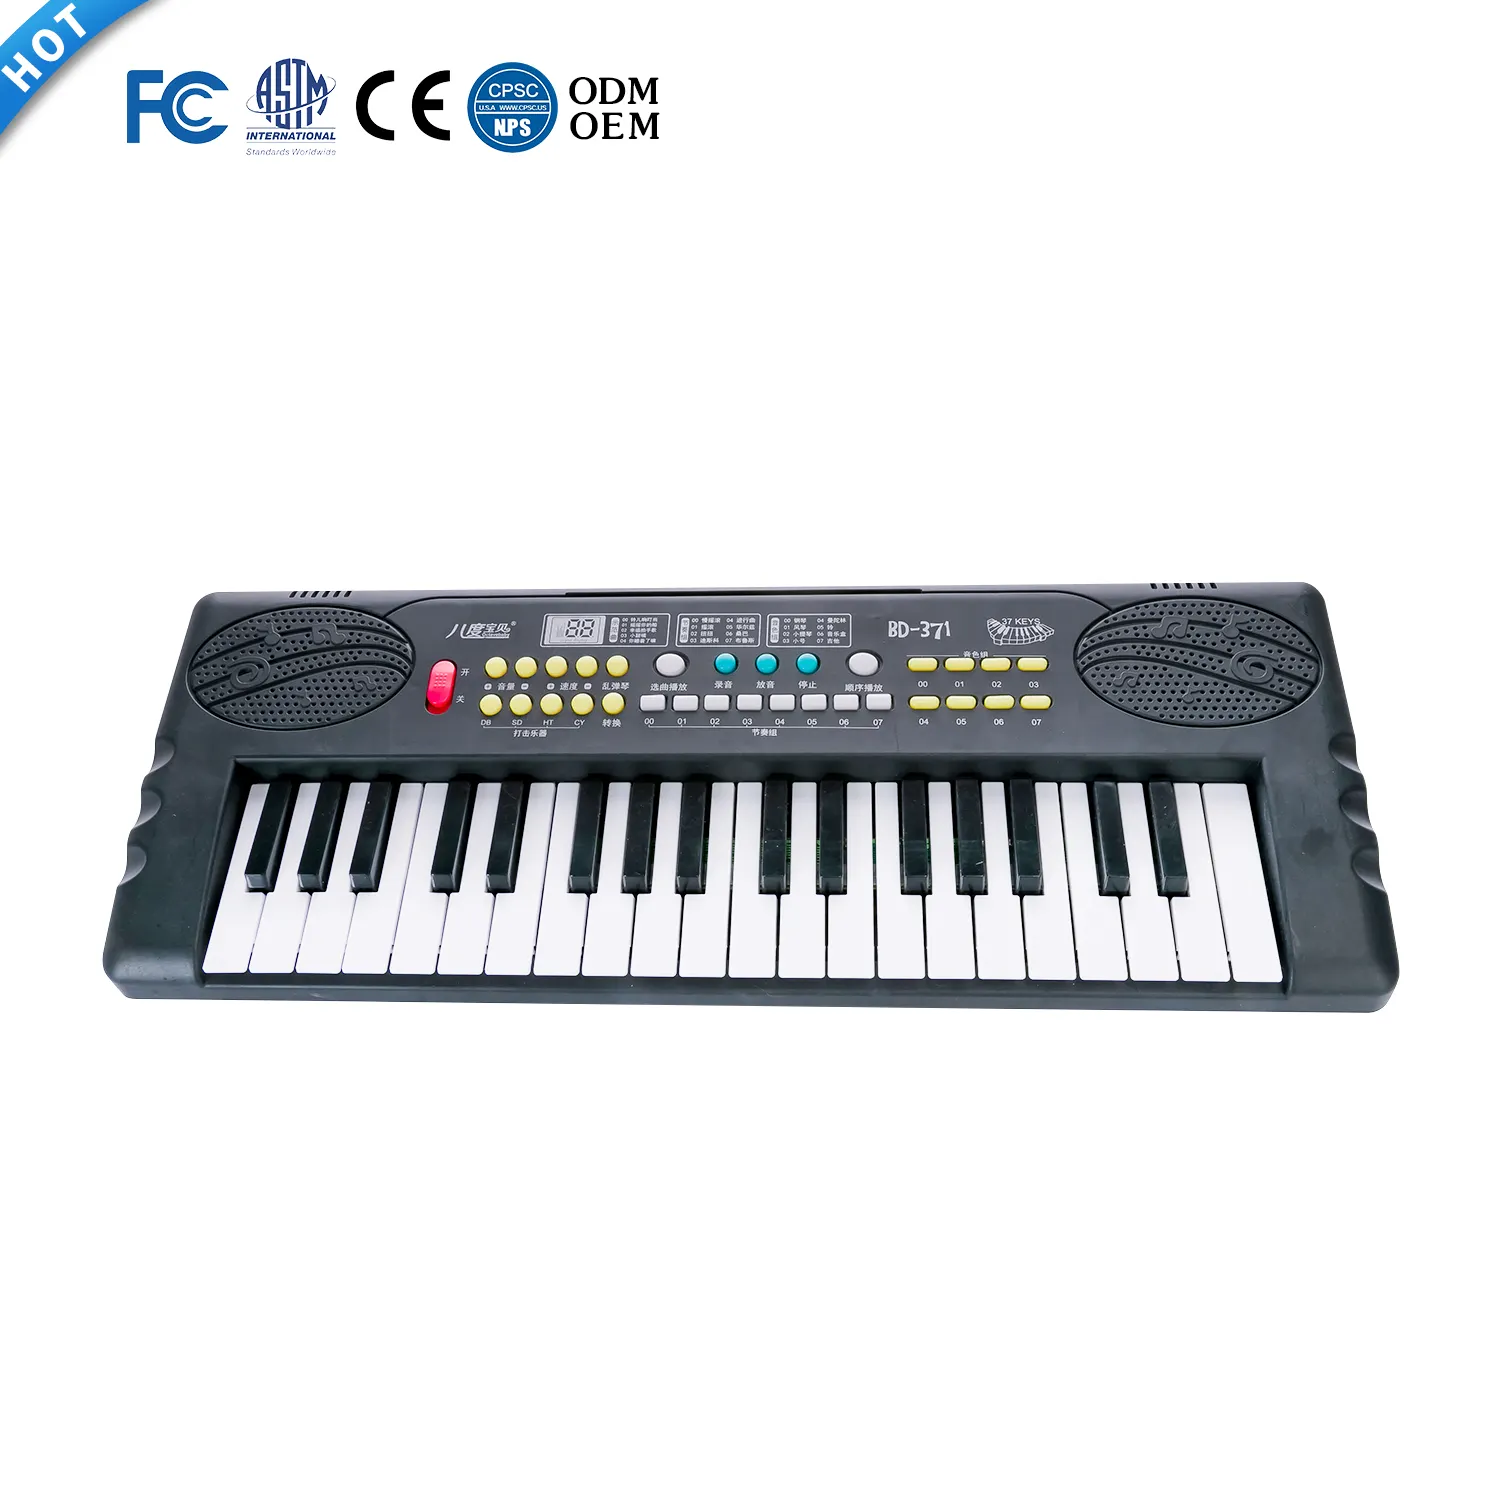 BD Music 37 chiavi musica educativa organo 2 altoparlanti giocattolo multifunzione strumento tastiera amichevole per l'apprendimento per principianti